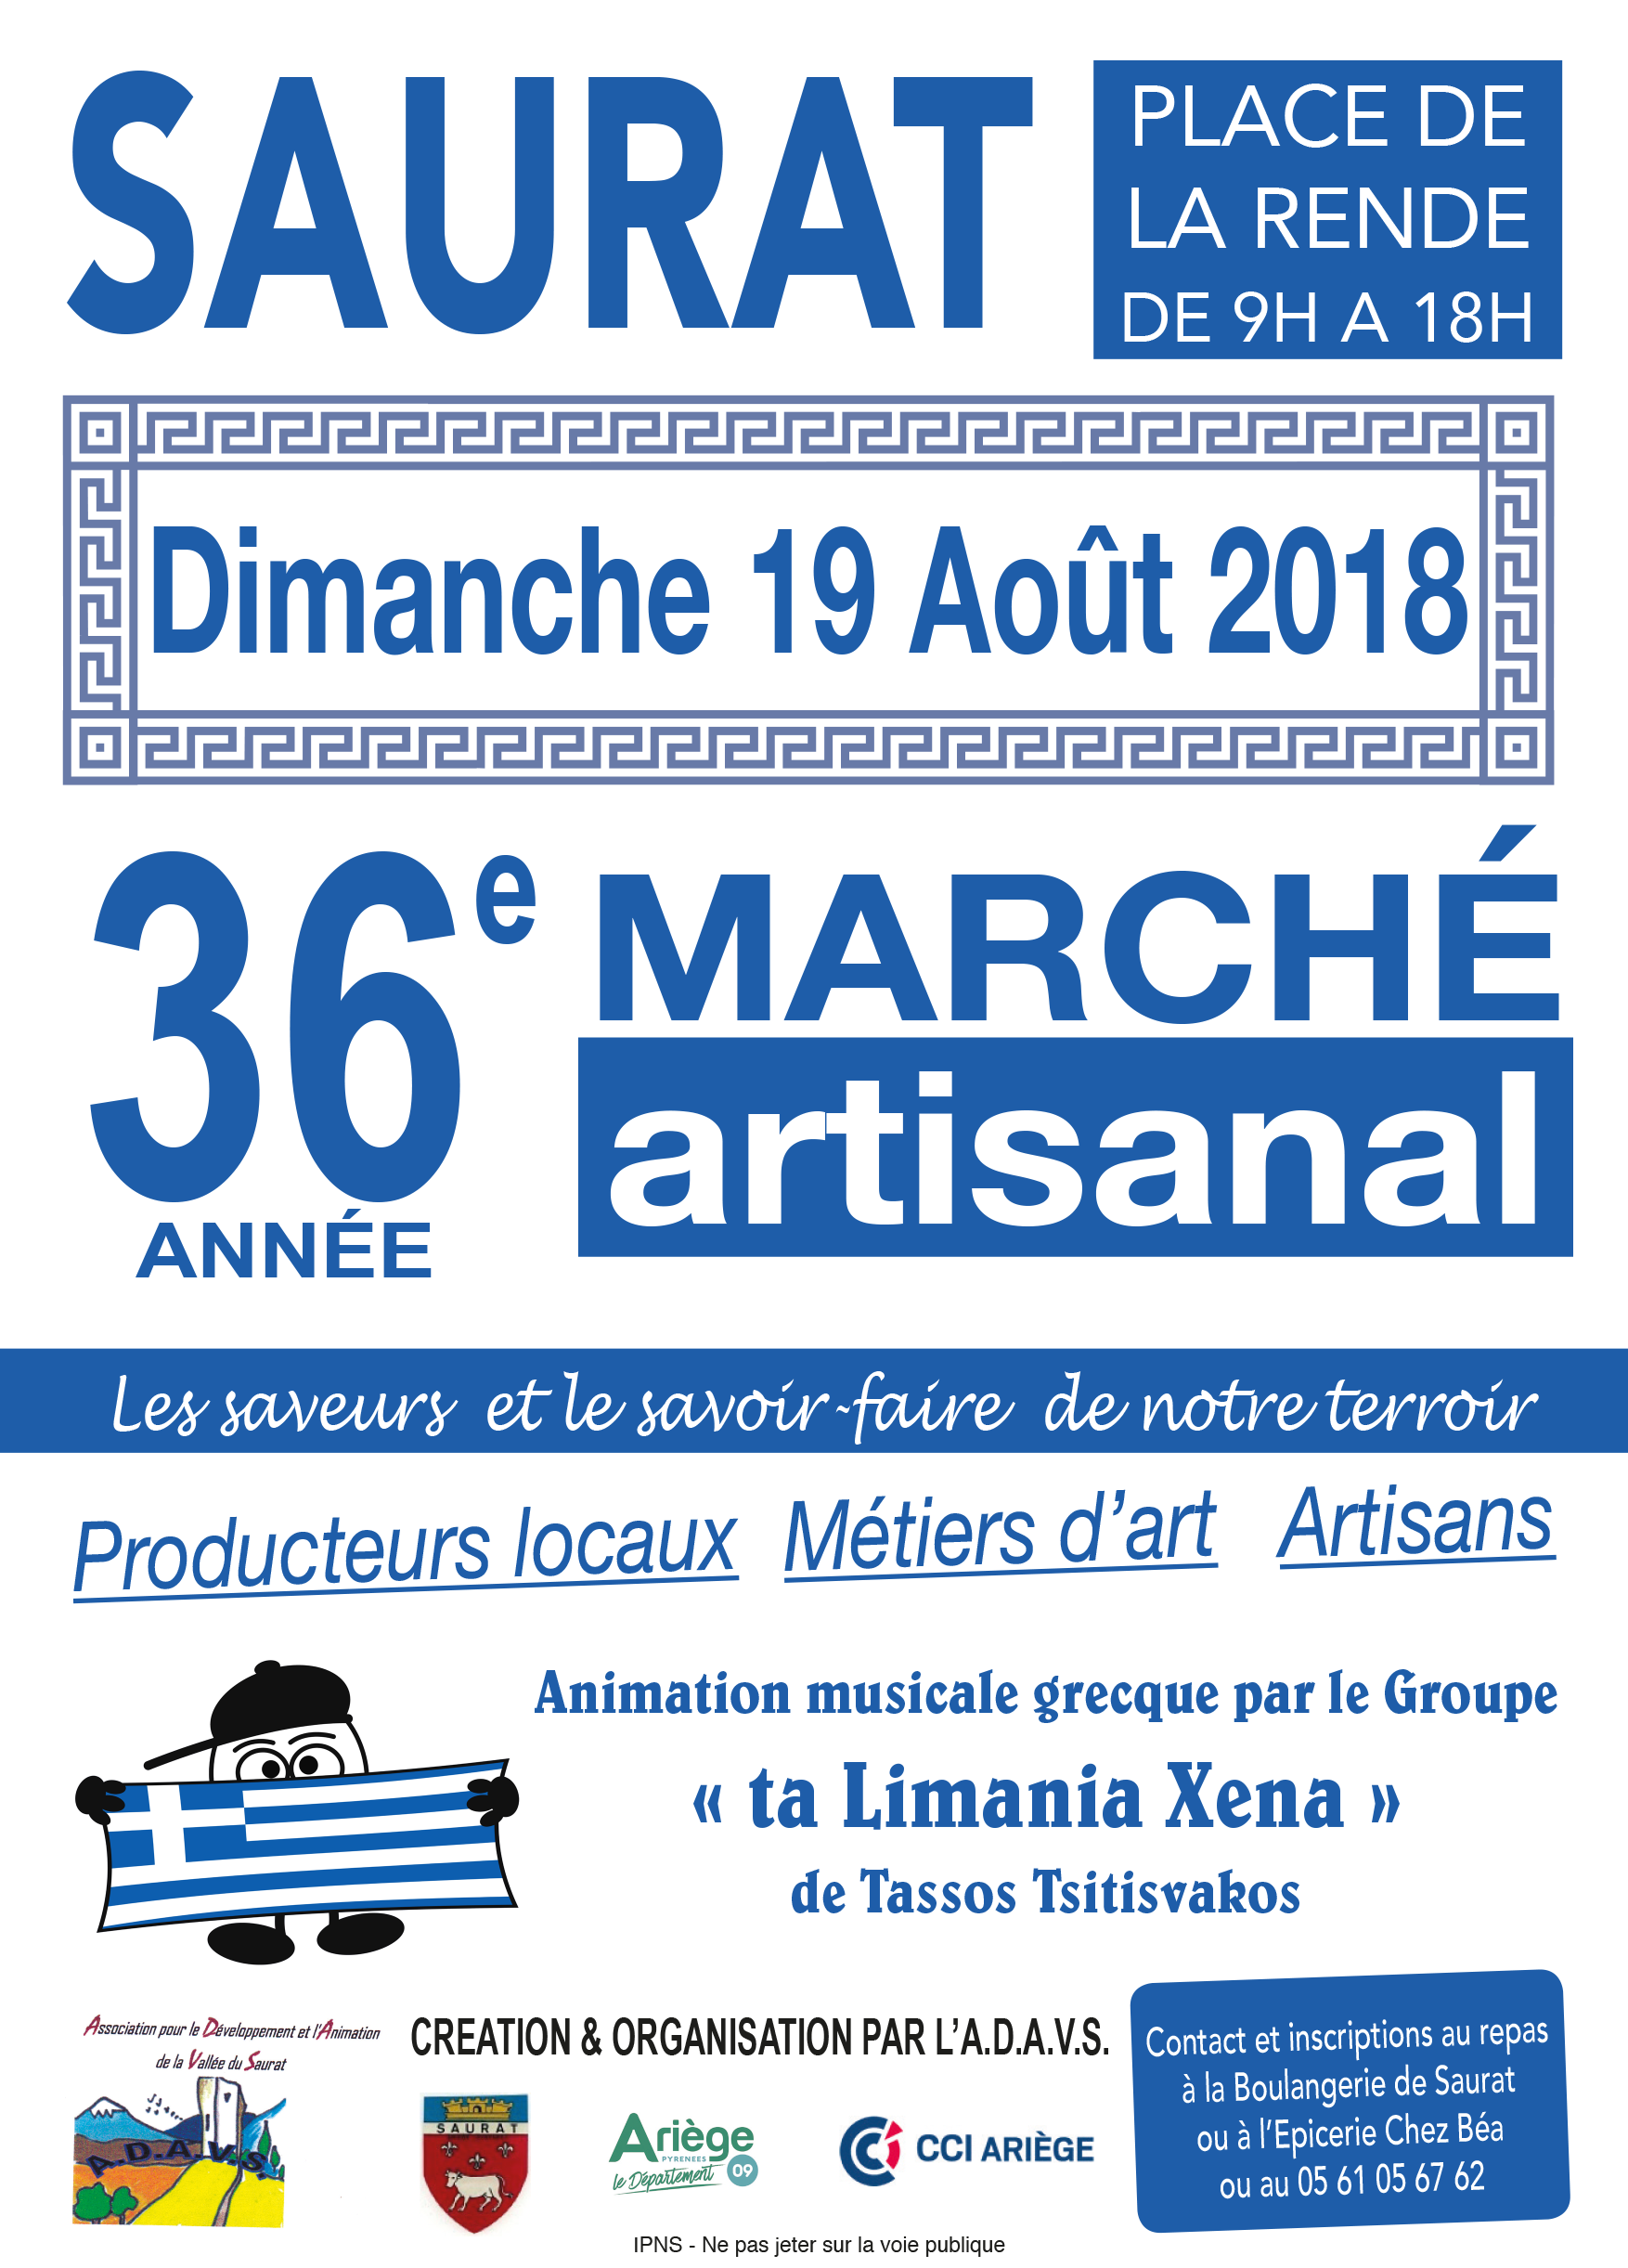 Saurat Marché artisanal d'aout 2018